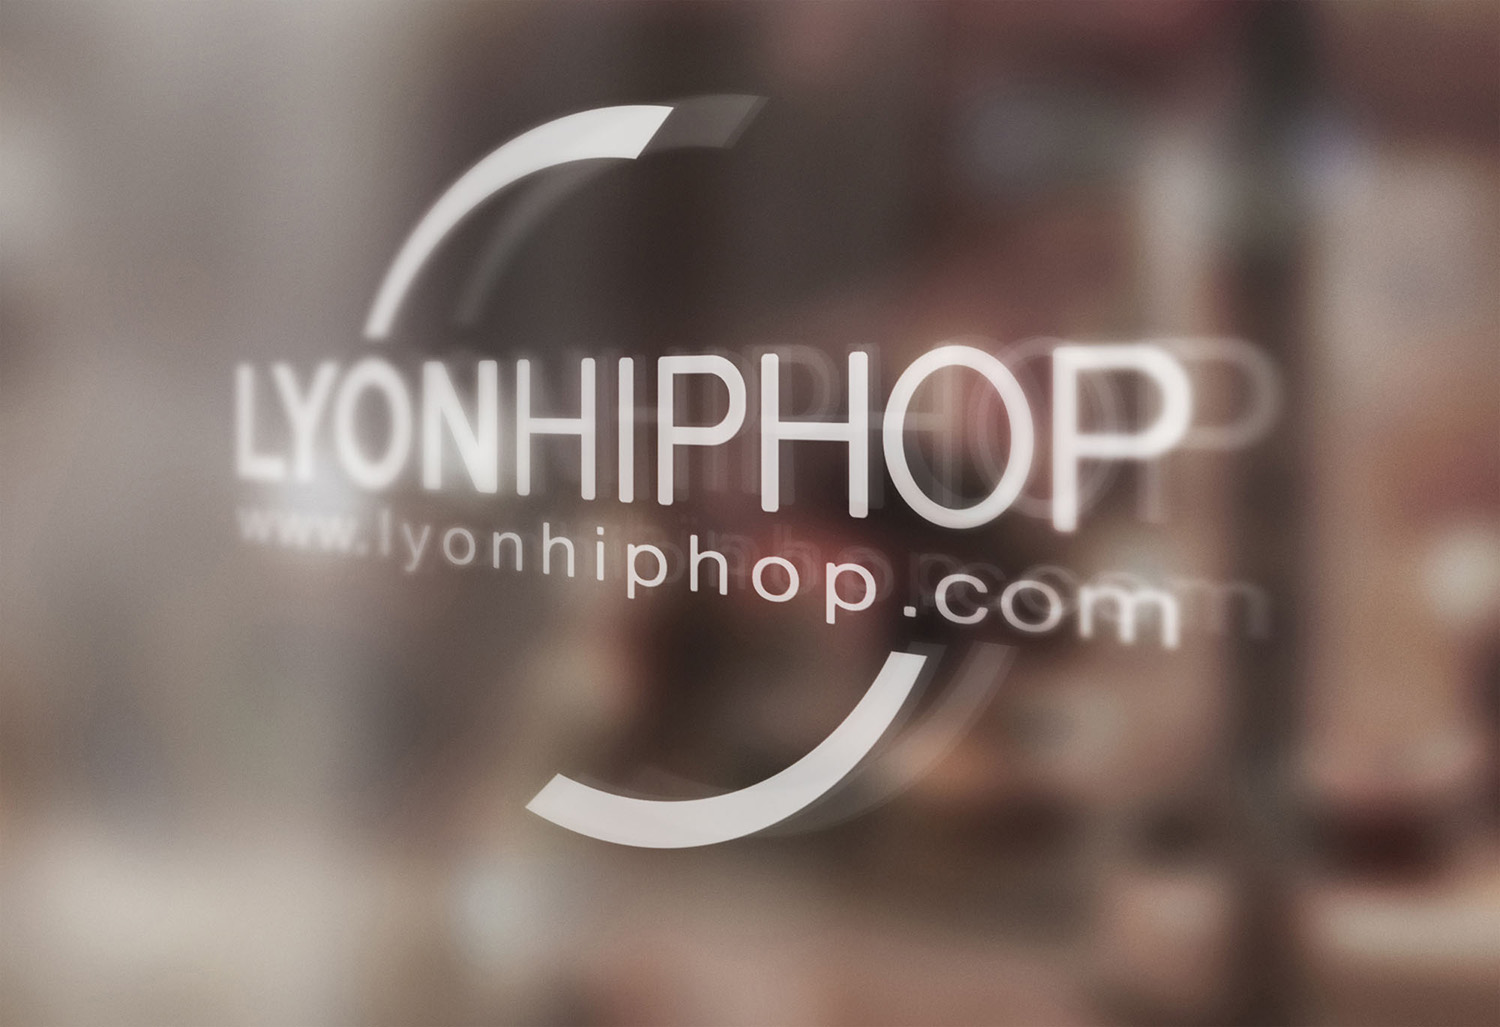 (c) Lyonhiphop.com